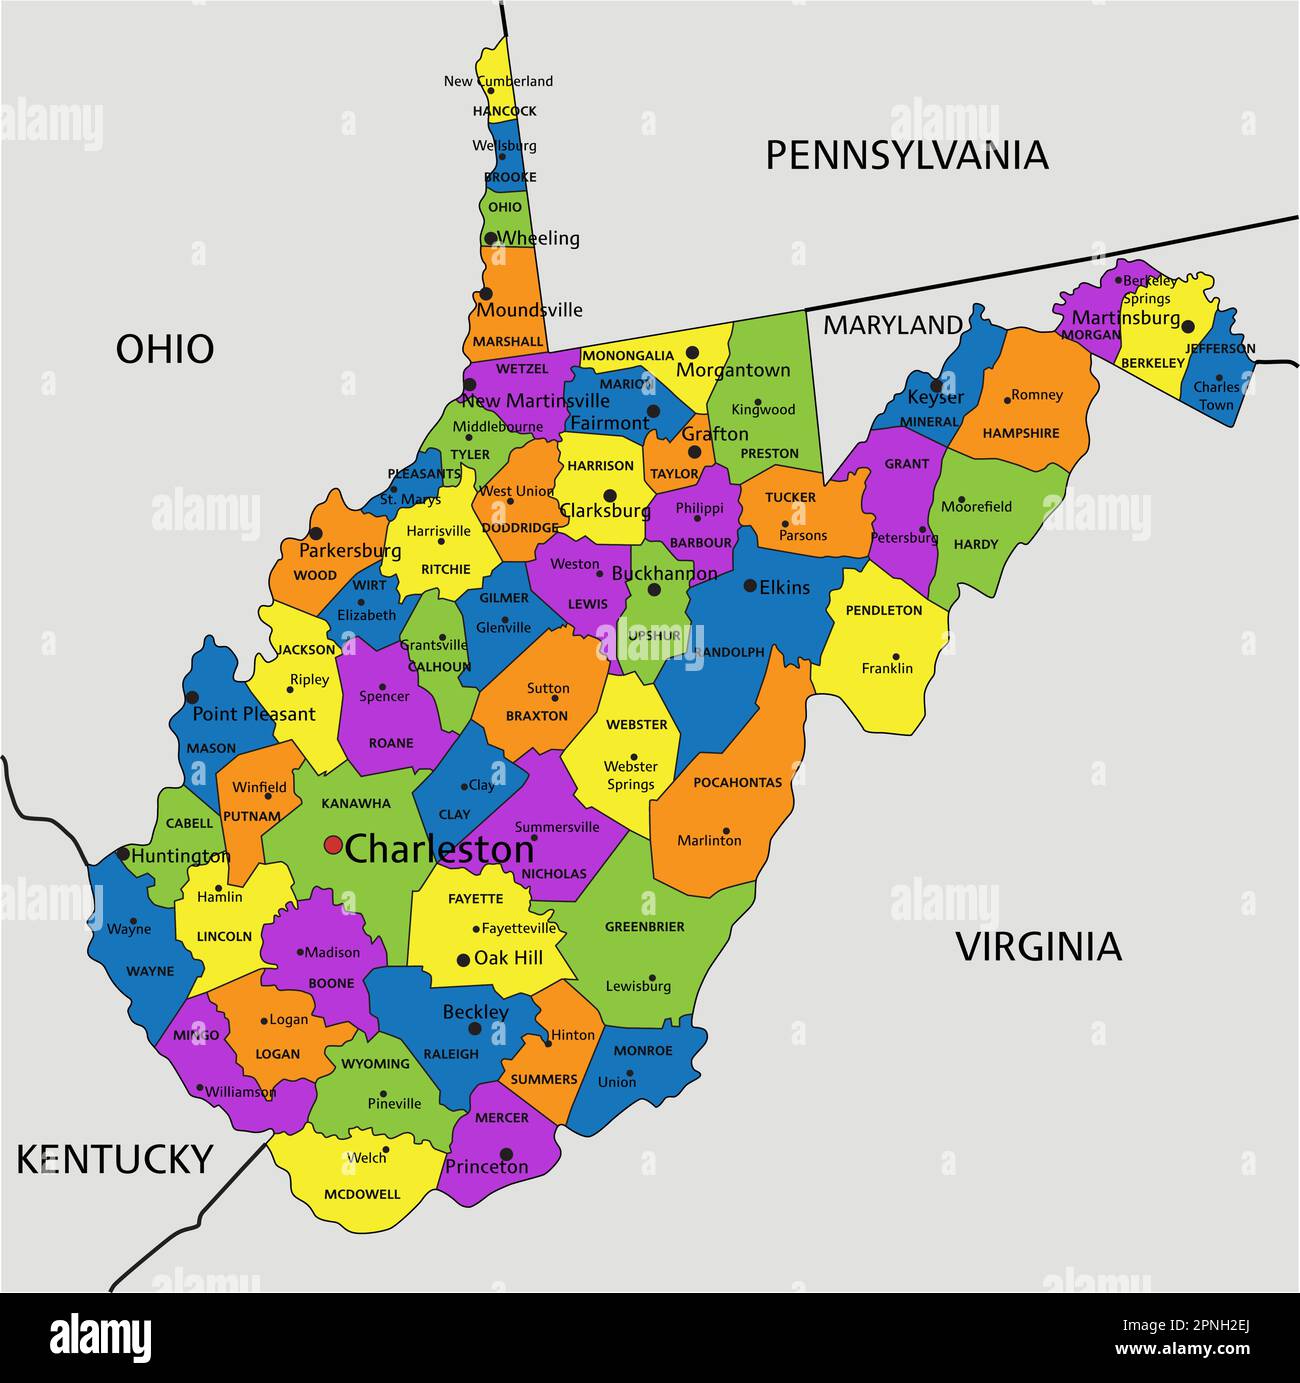 Farbenfrohe politische Karte von West Virginia mit klar gekennzeichneten, getrennten Schichten. Vektordarstellung. Stock Vektor